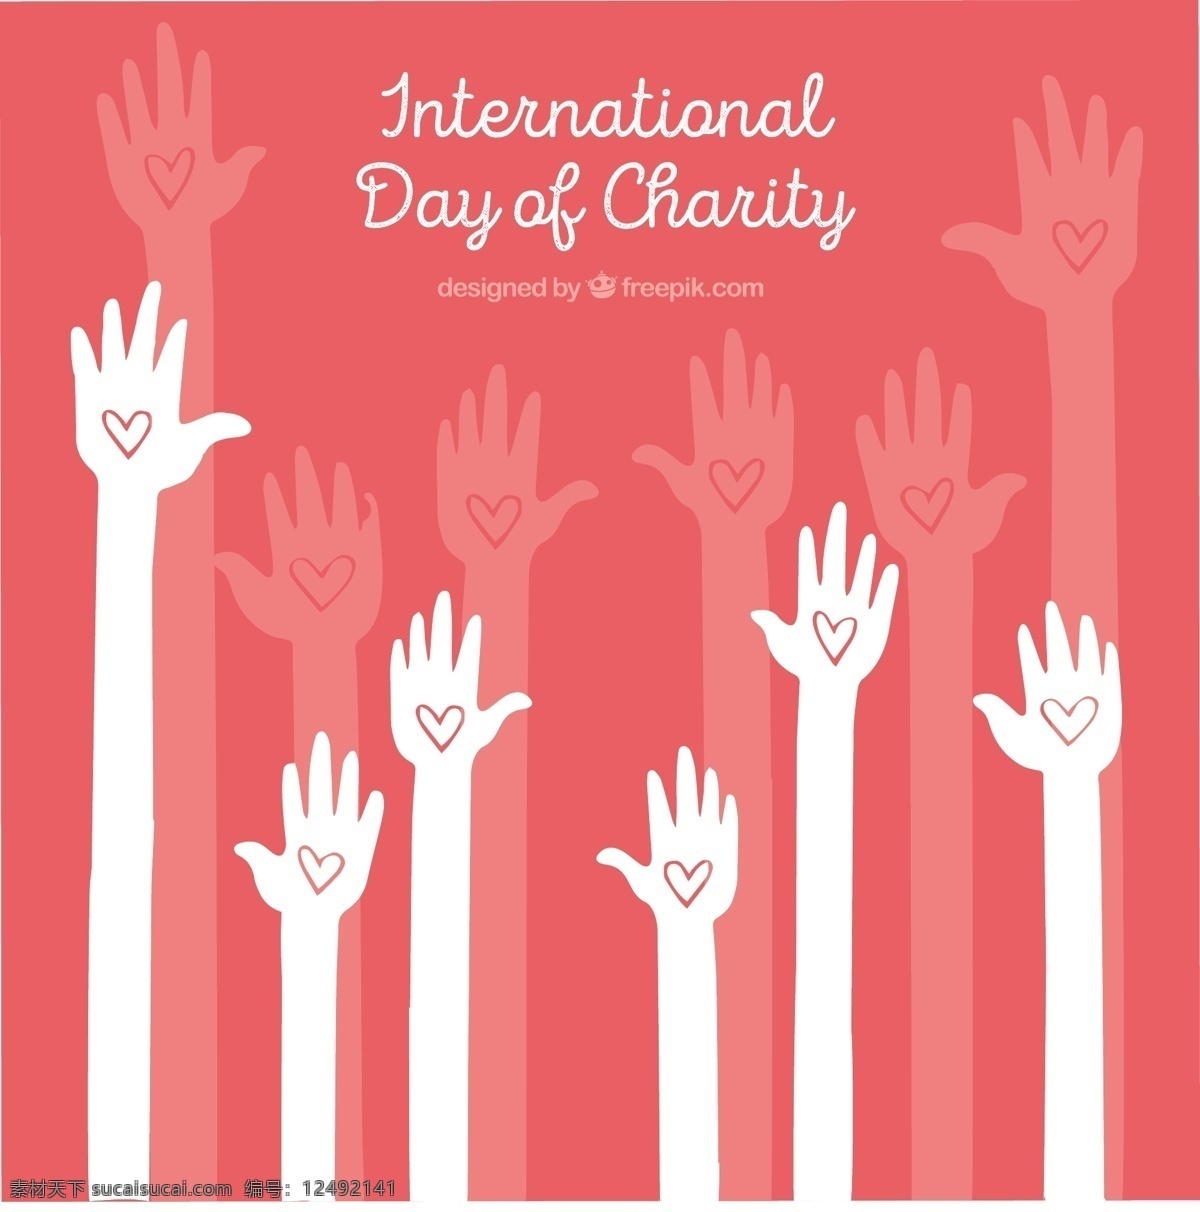 举起手画的心 背景 心 人 手 医疗 世界 社会 帮助 生活 支持 社区 慈善 关心 组织 希望 国际 捐赠 日